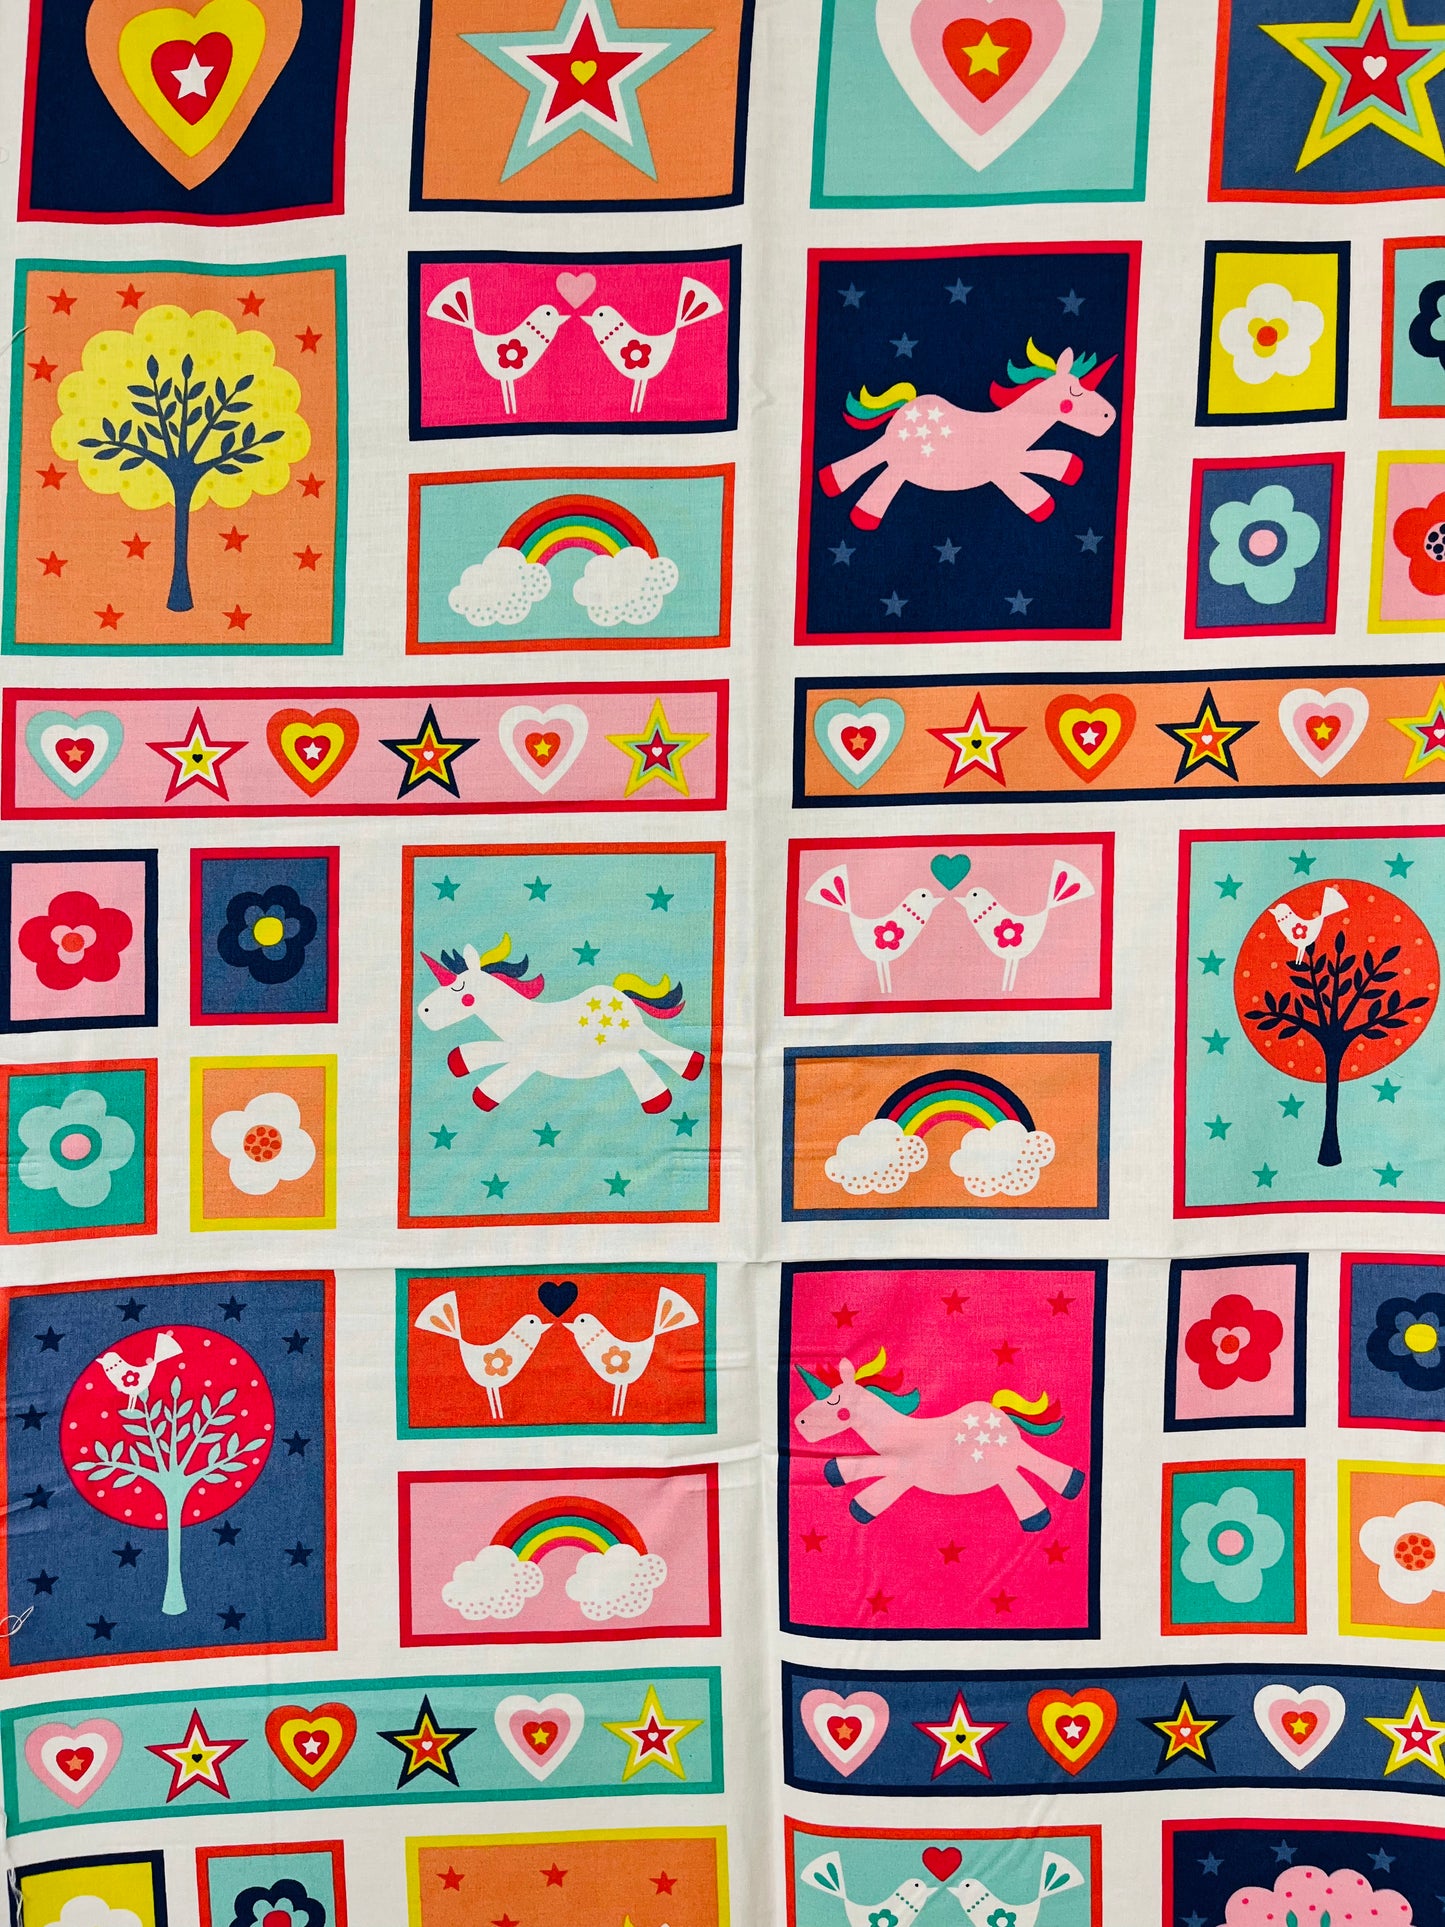 Unicorns & Rainbows Children's Cot Quilt Fabric Panel